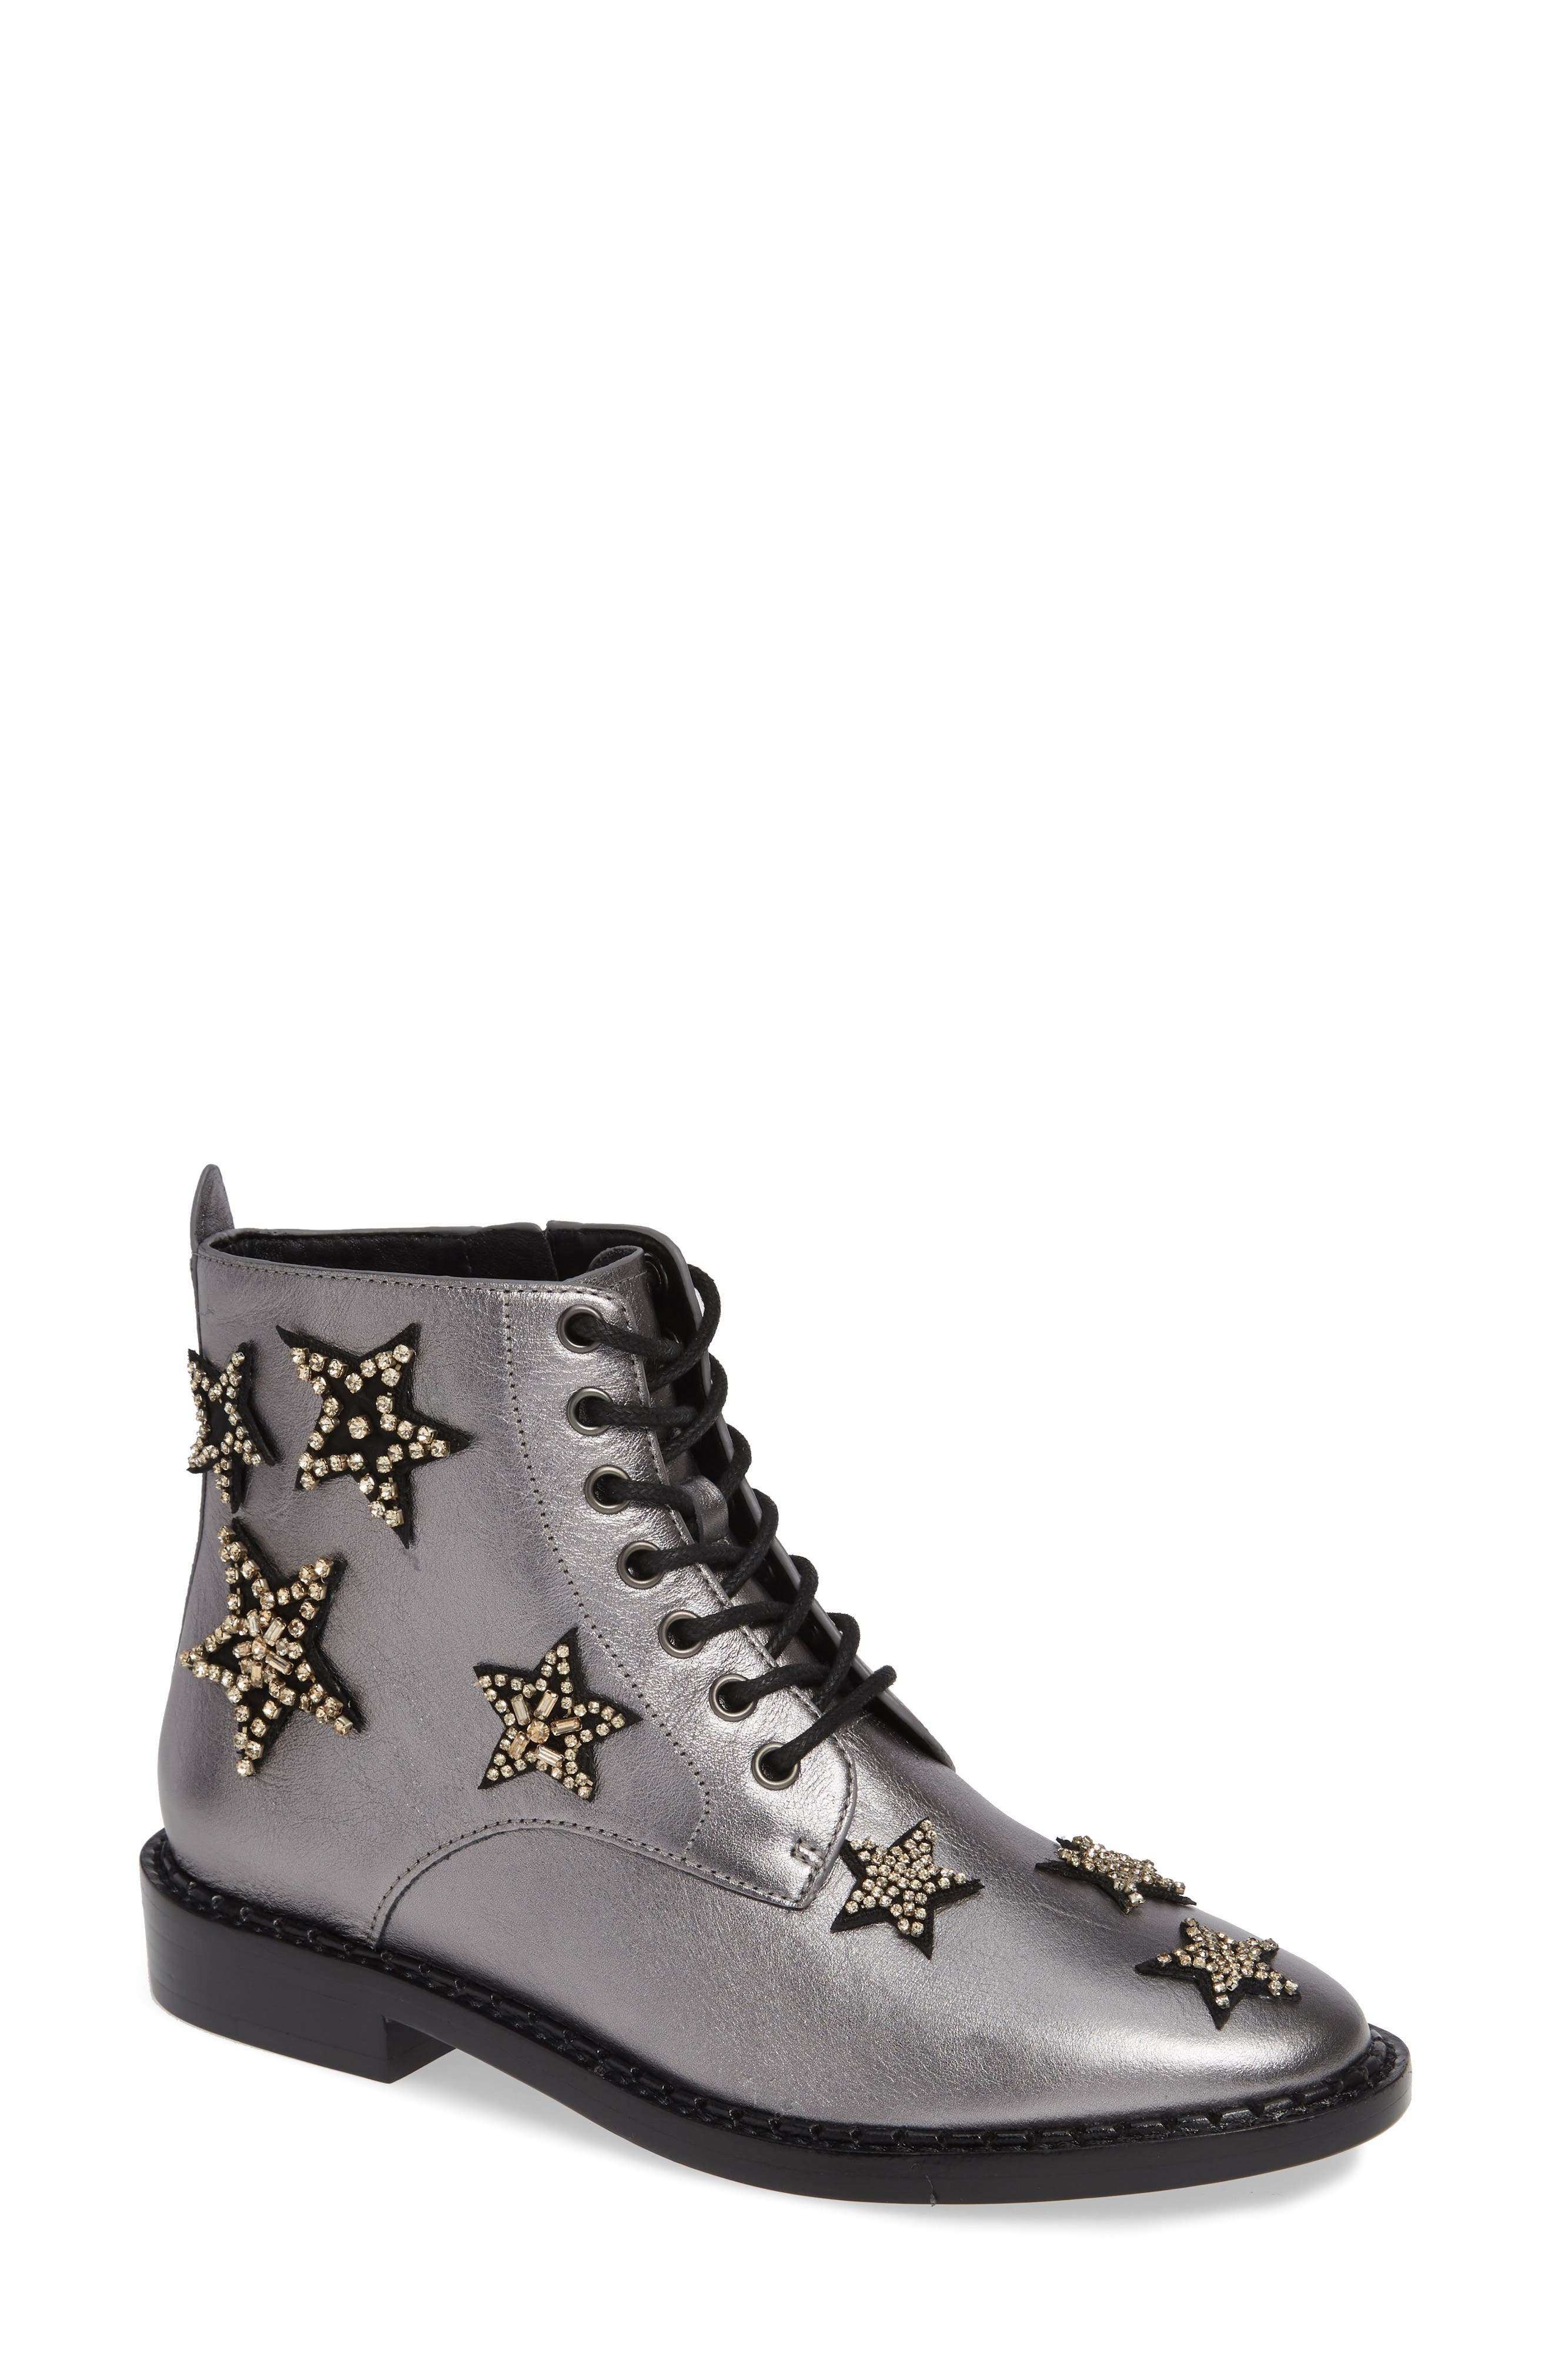 star combat boots